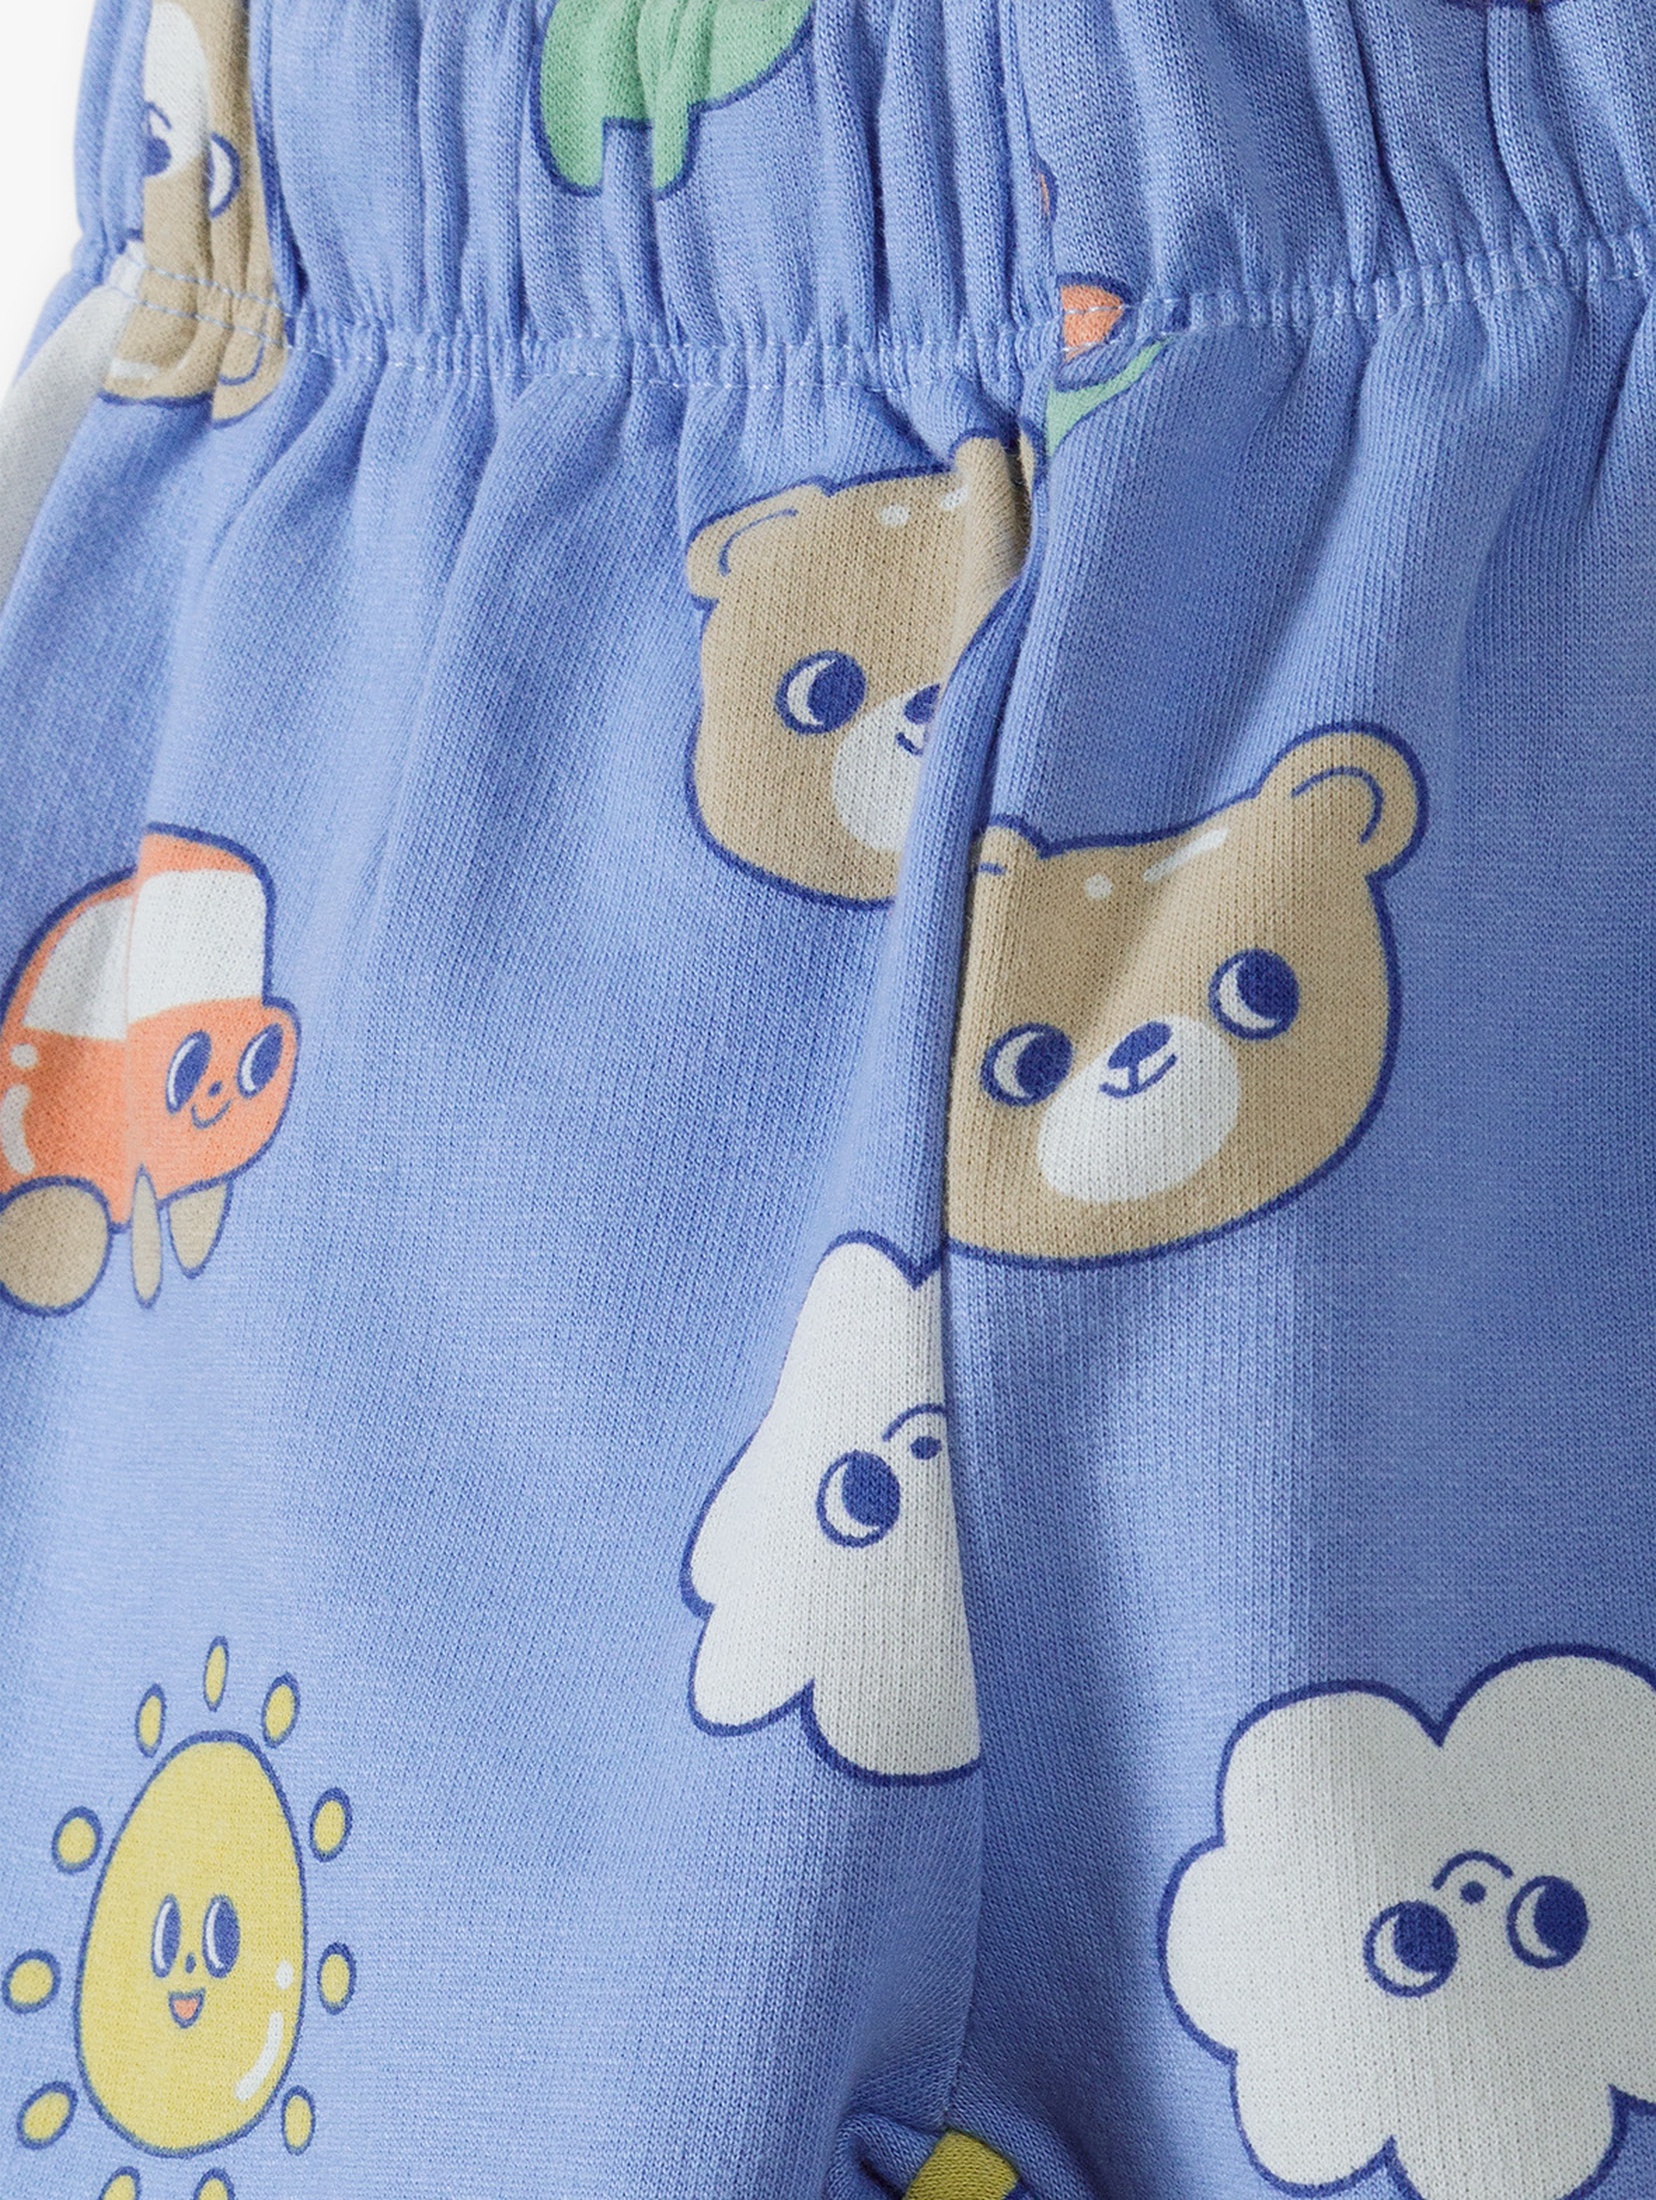 Niebieskie spodnie dresowe dla niemowlaka - 5.10.15.